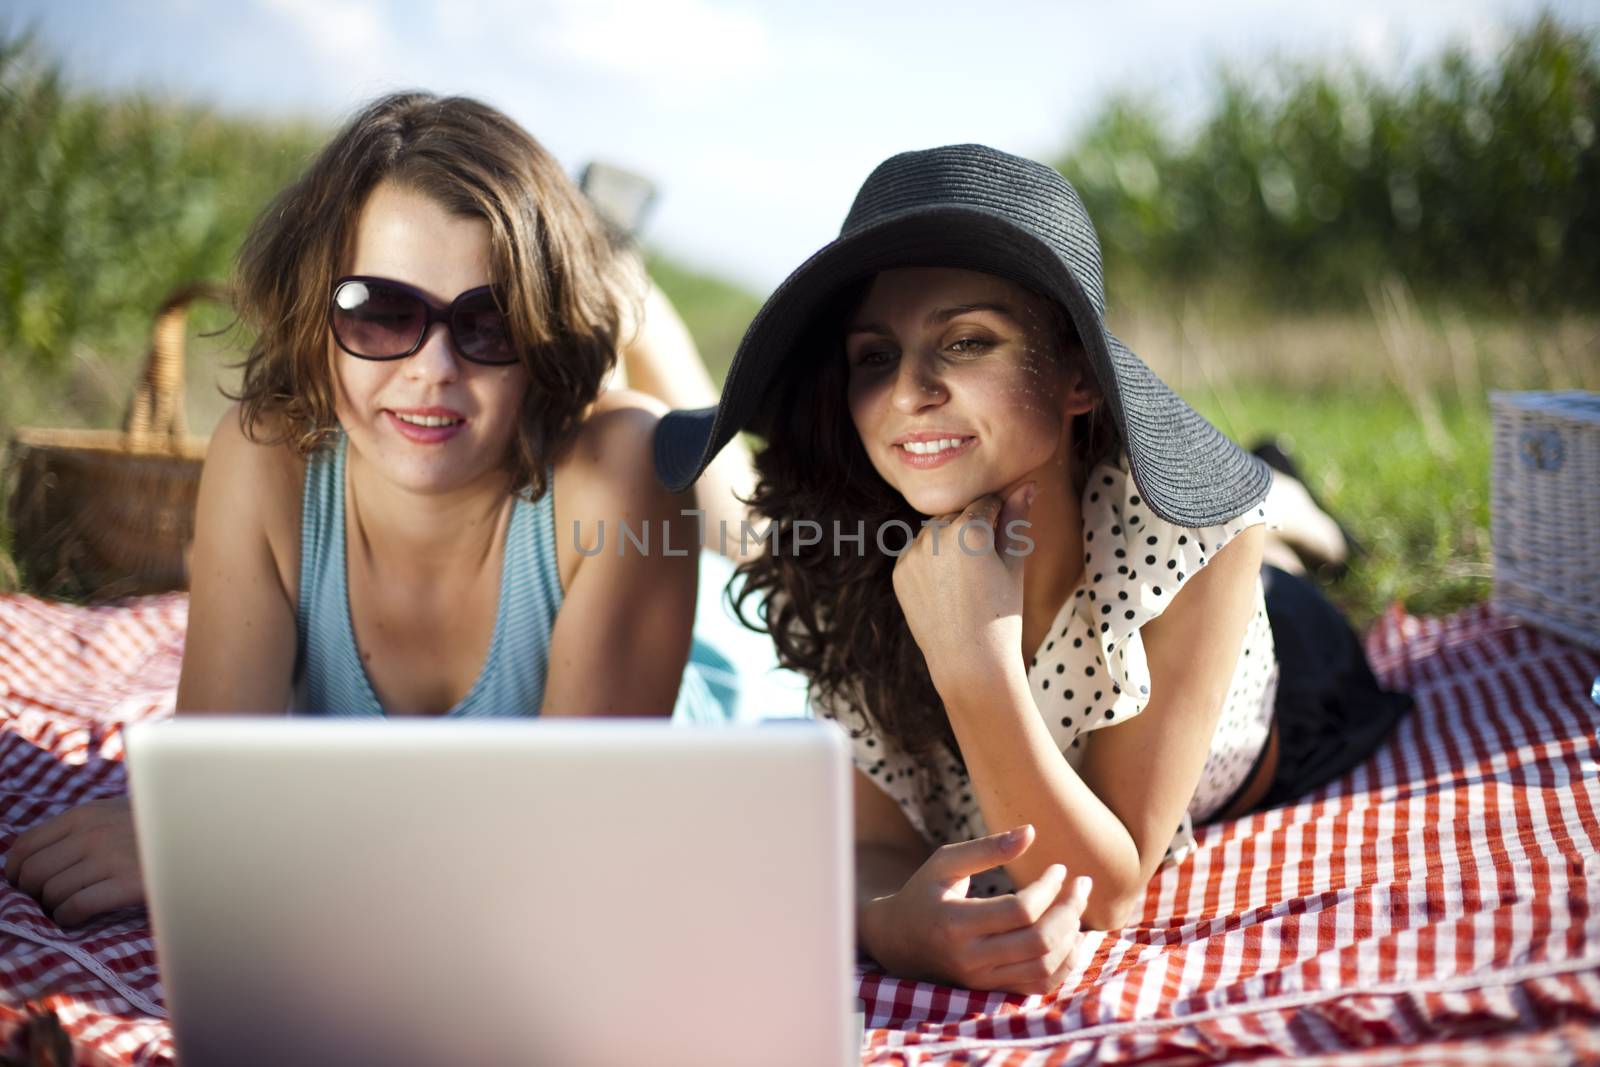 Girls on picnic, summer free time spending